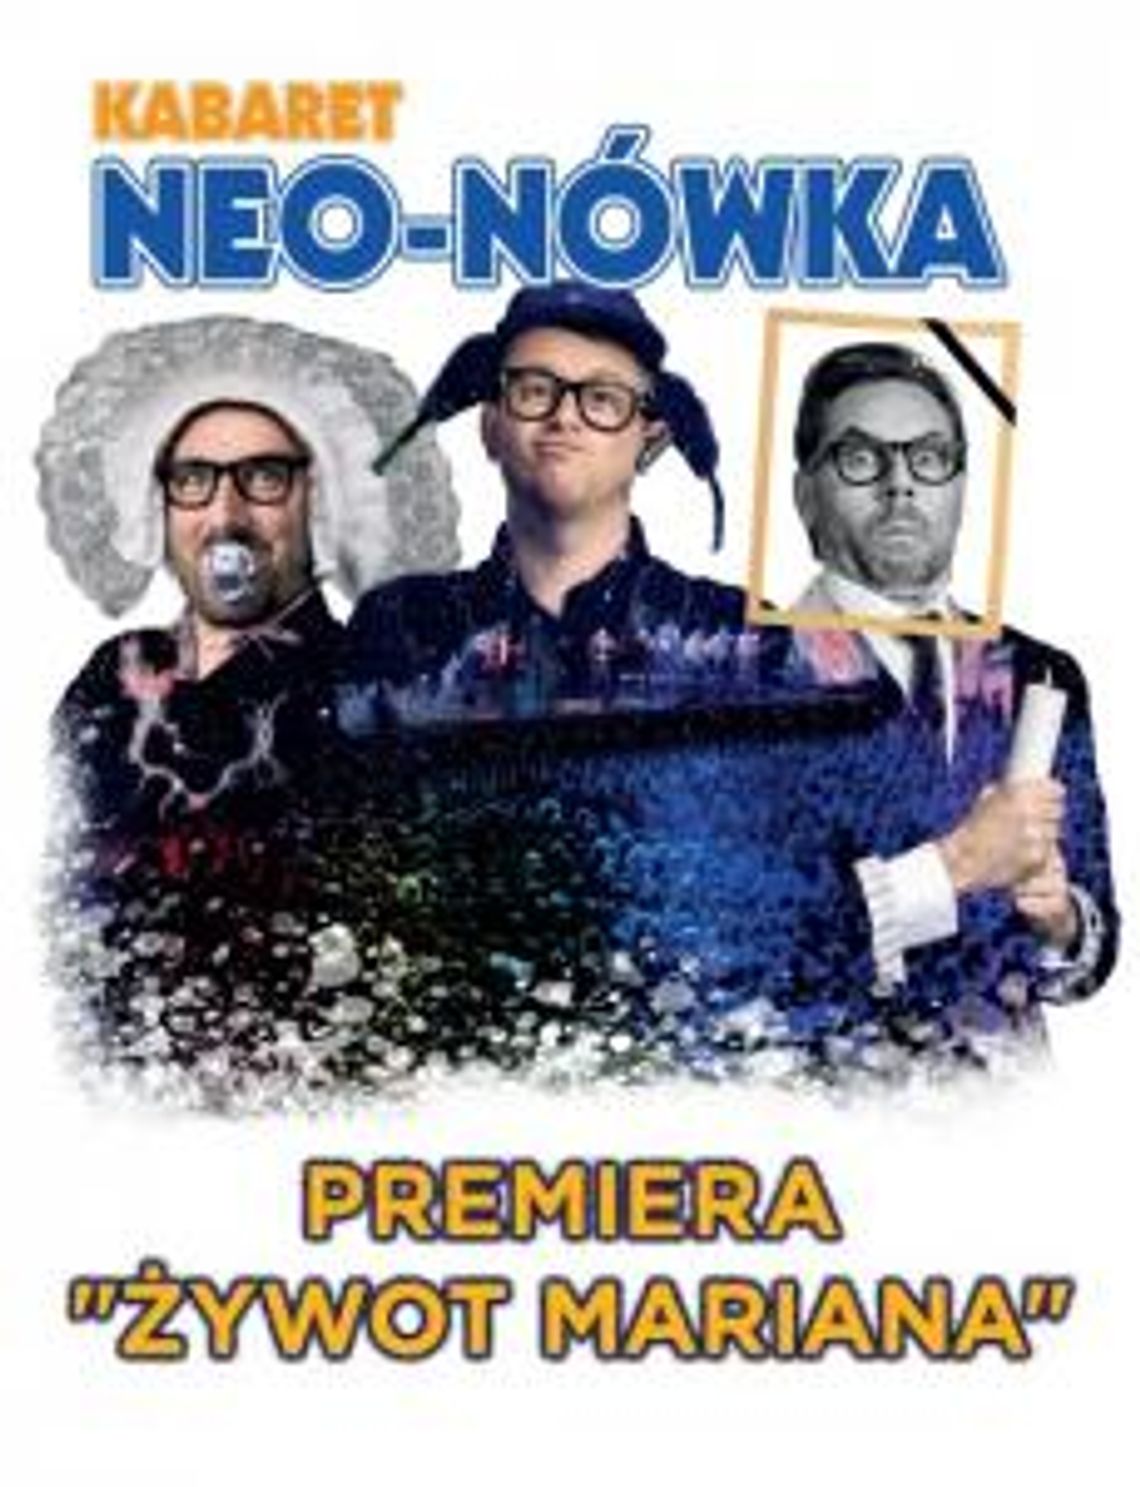  Kabaret Neo-Nówka "Żywot Mariana"